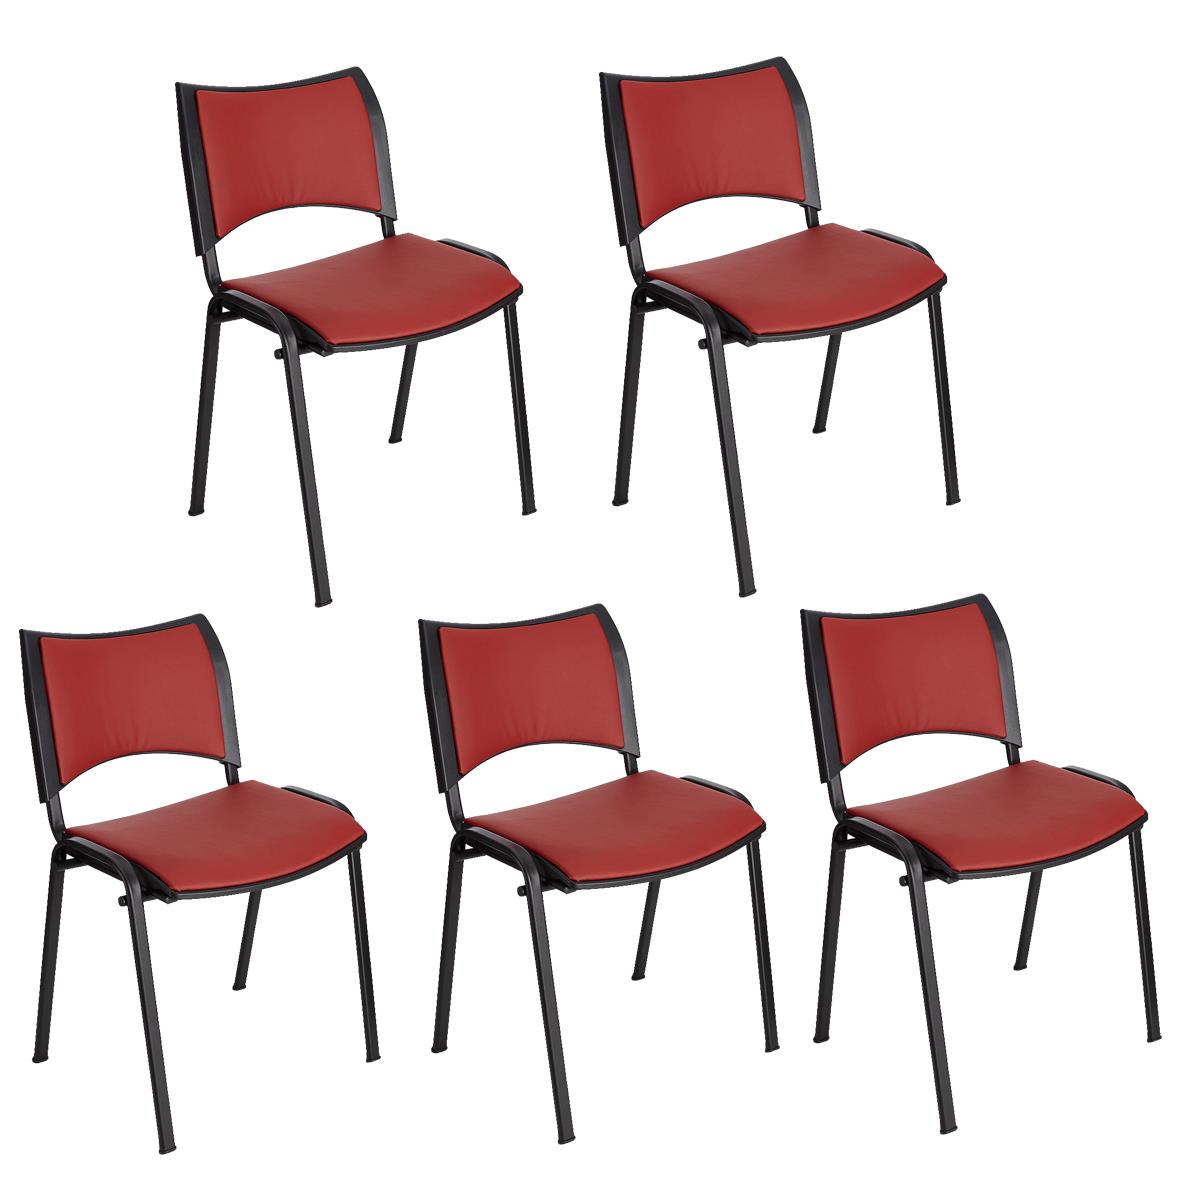 Lote 5 Cadeiras de Visita ROMEL PELE, Prática e Empilhável, Pernas Pretas, Vermelho